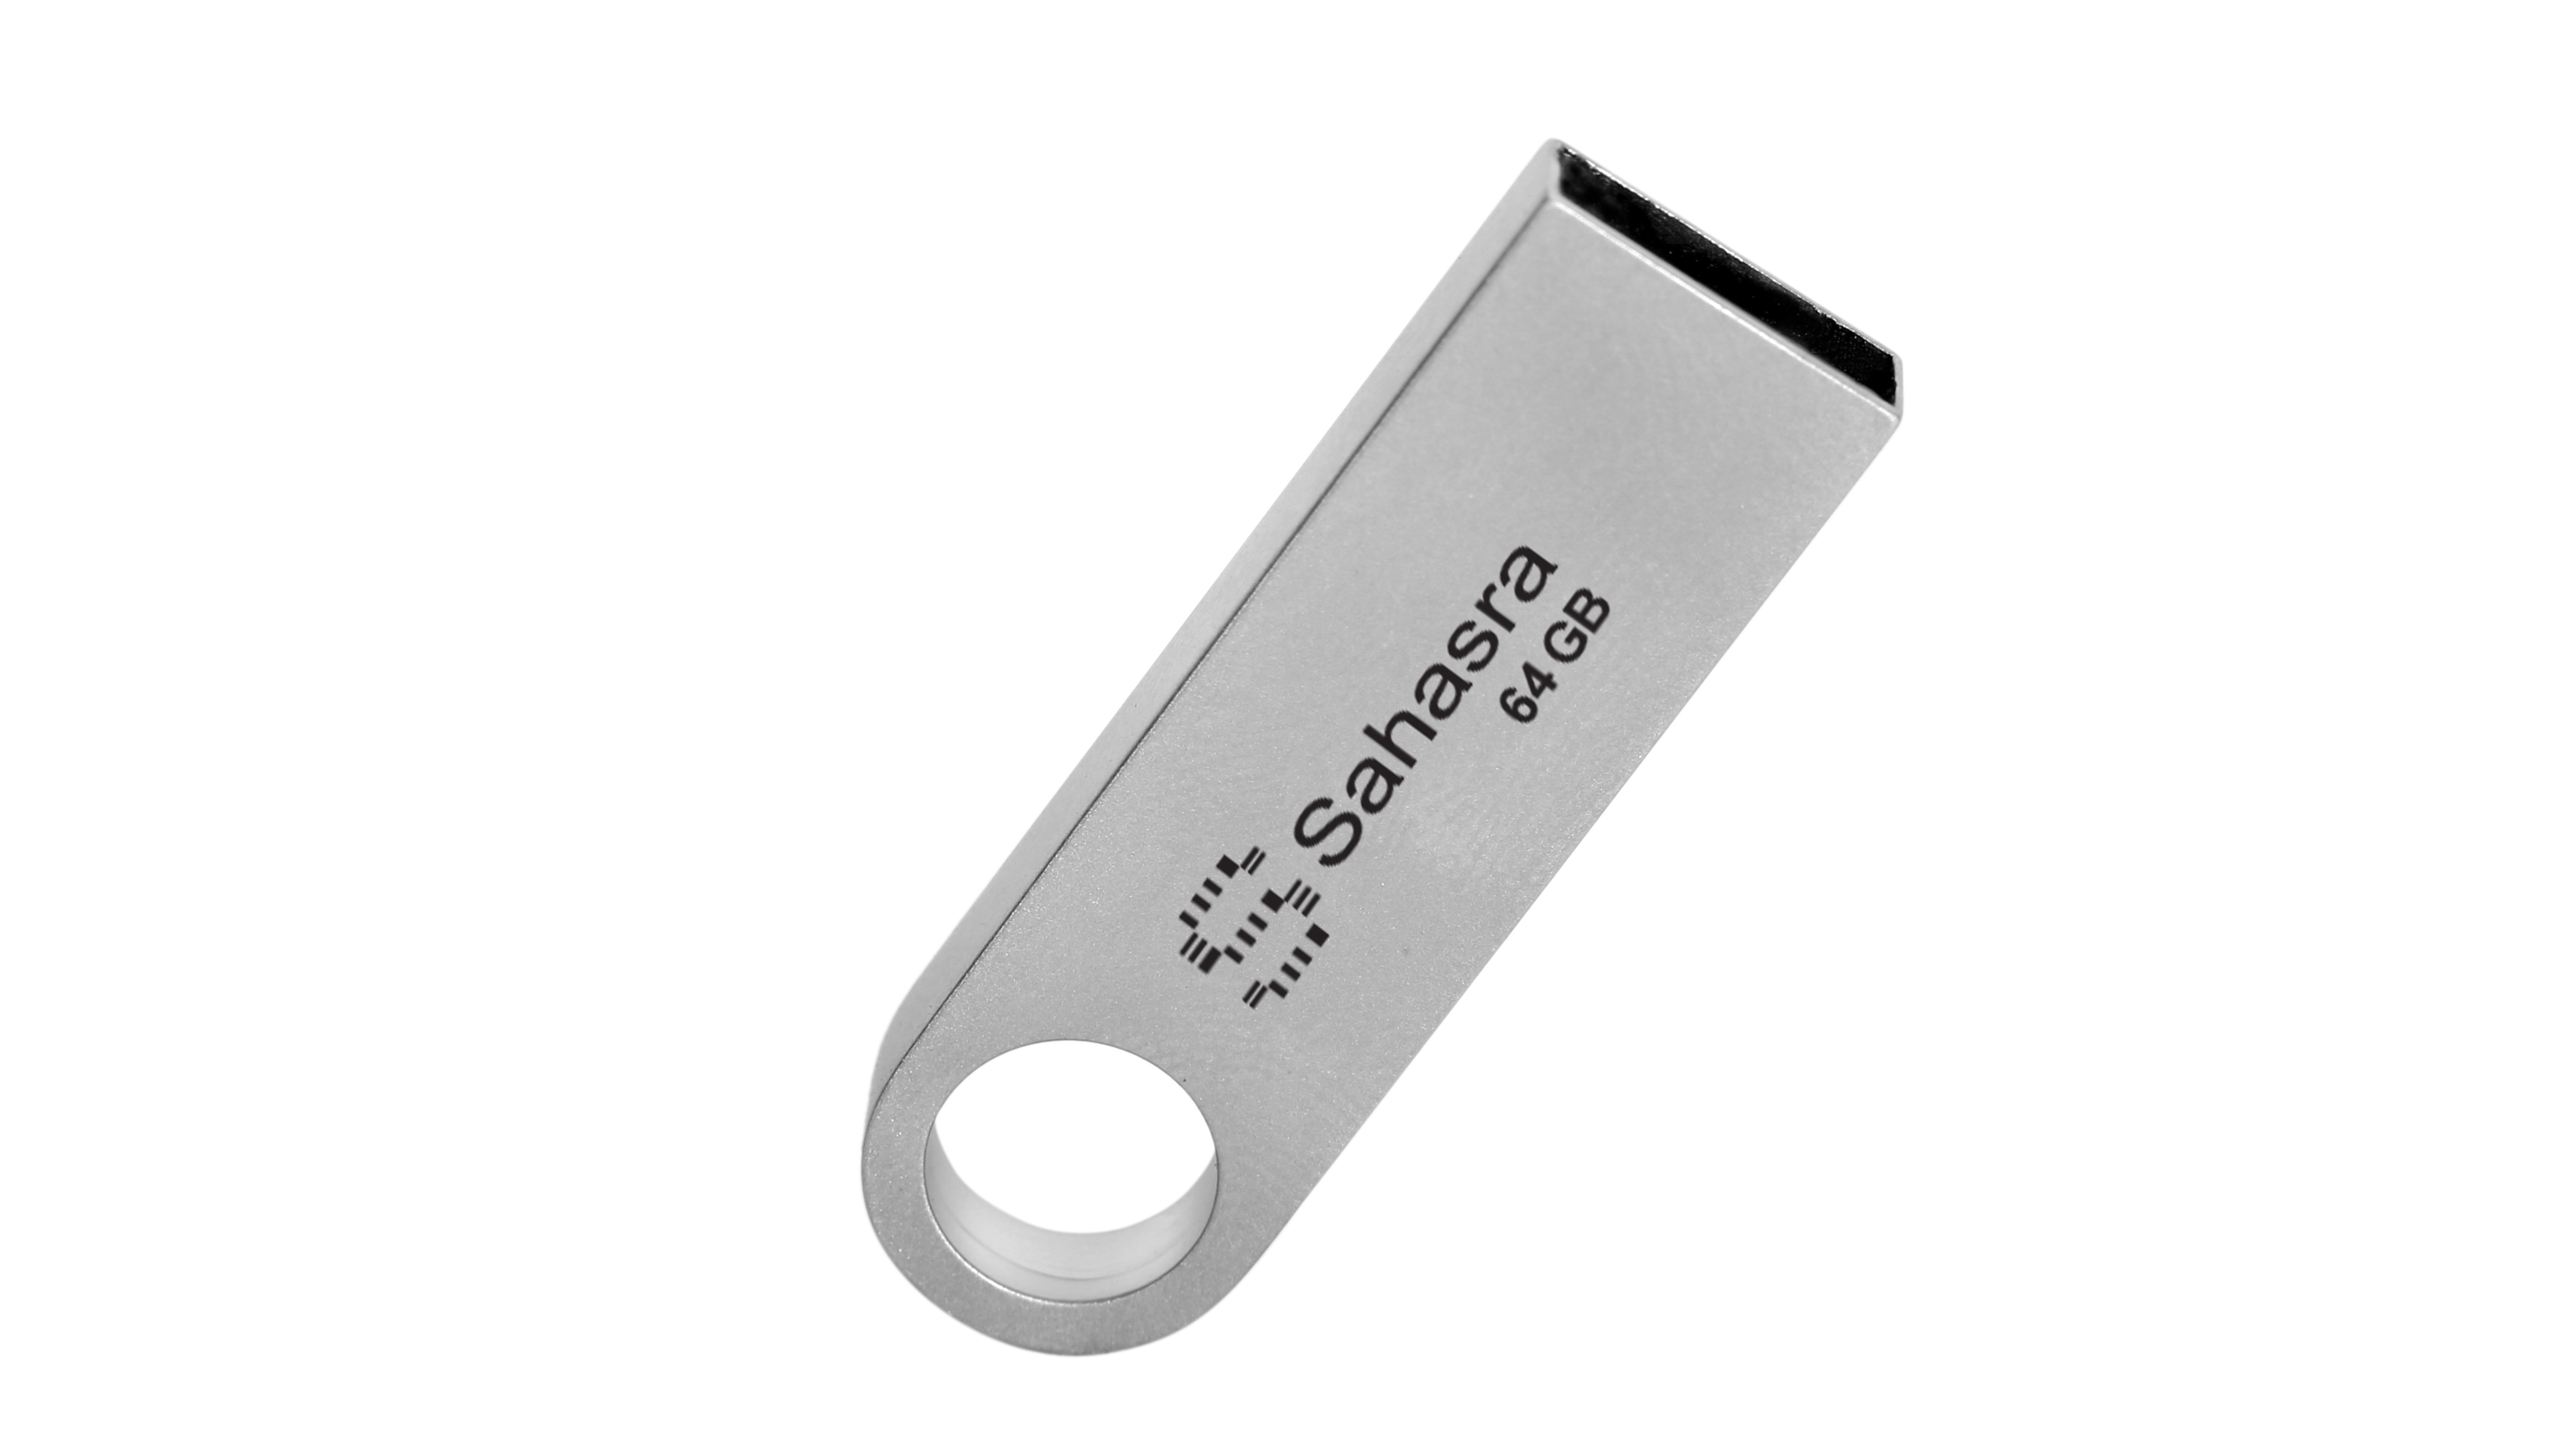 Sahasra USB Flash Drive 2.0 / 3.0